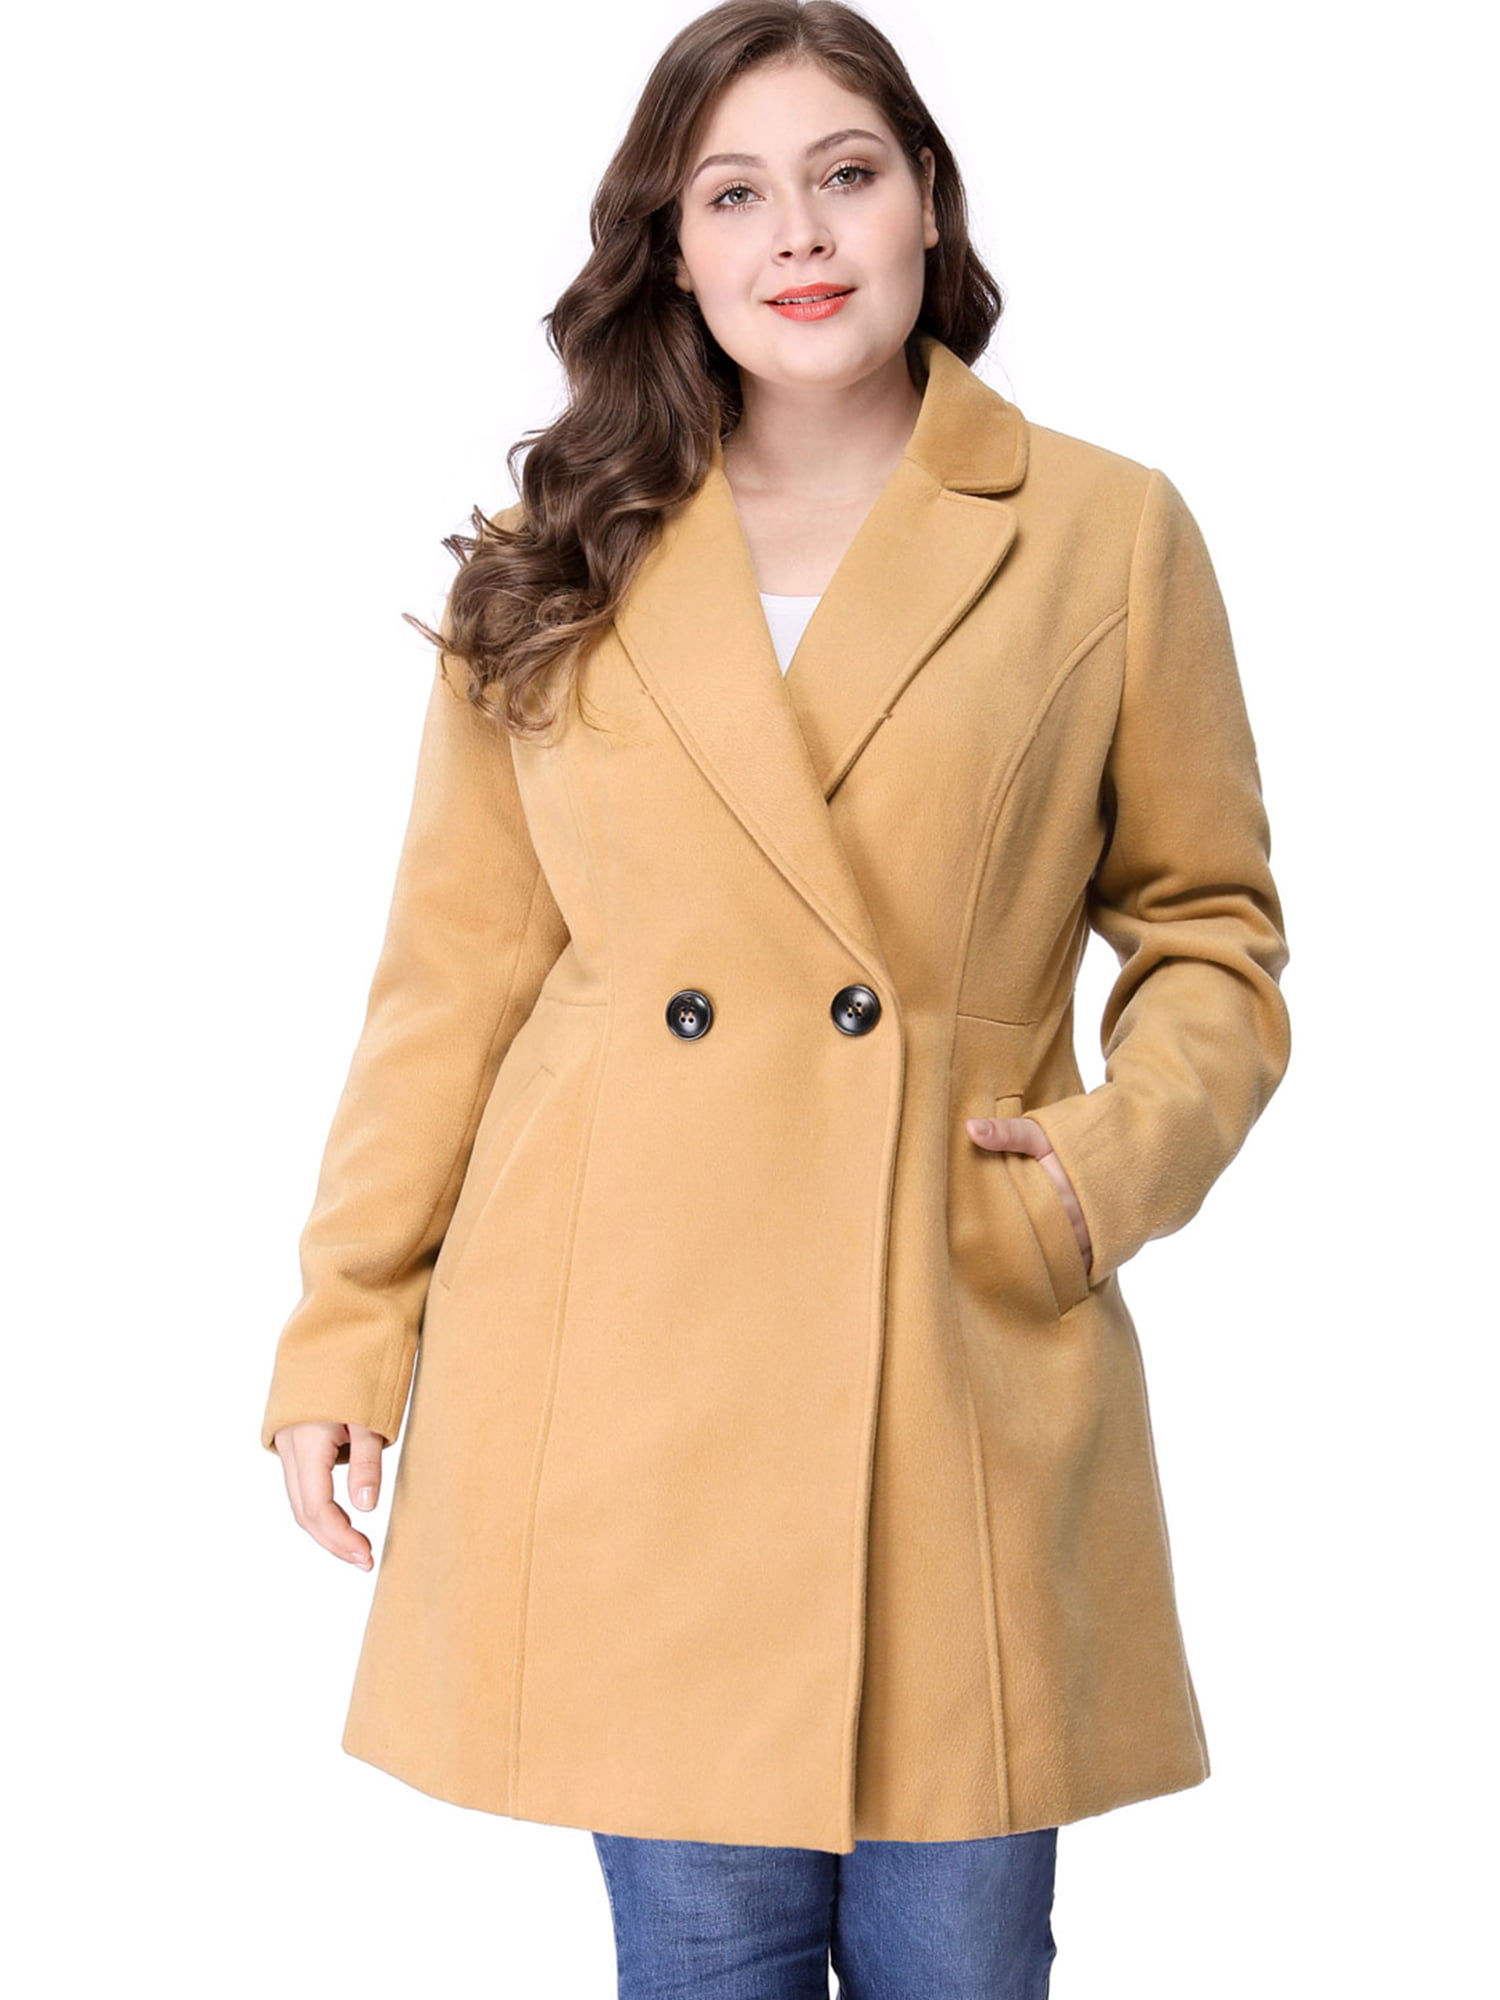 Unique Bargains - Women's Plus Size Winter Outwear Peacoat Lapel Coat ...